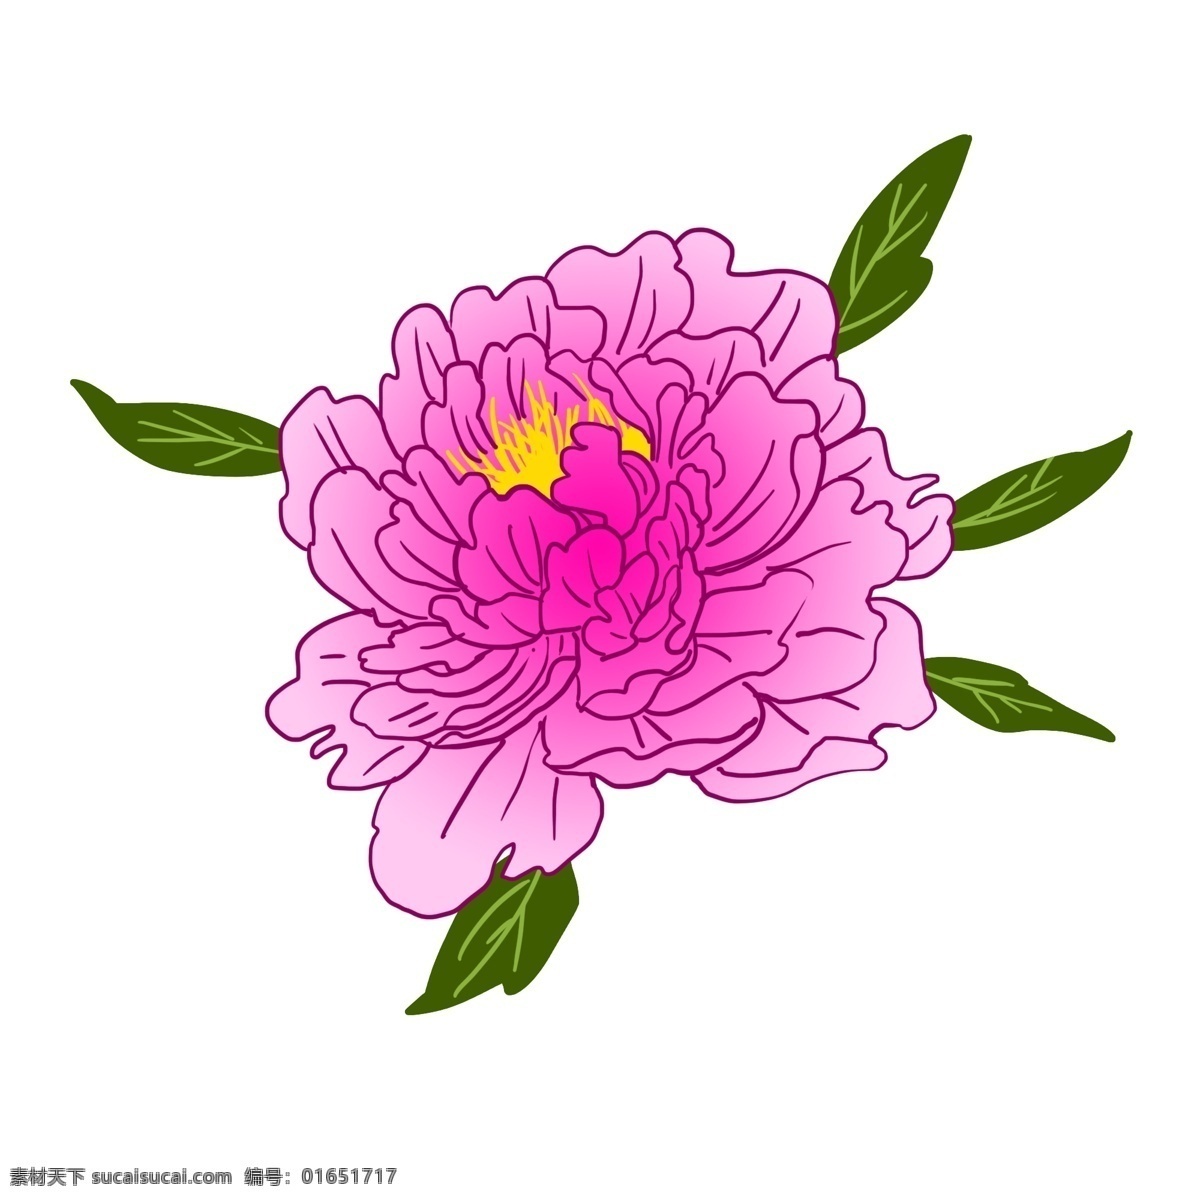 工笔 富贵 牡丹 插画 绿色的叶子 洛阳的牡丹 粉色的牡丹 漂亮的牡丹 卡通插画 手绘牡丹插画